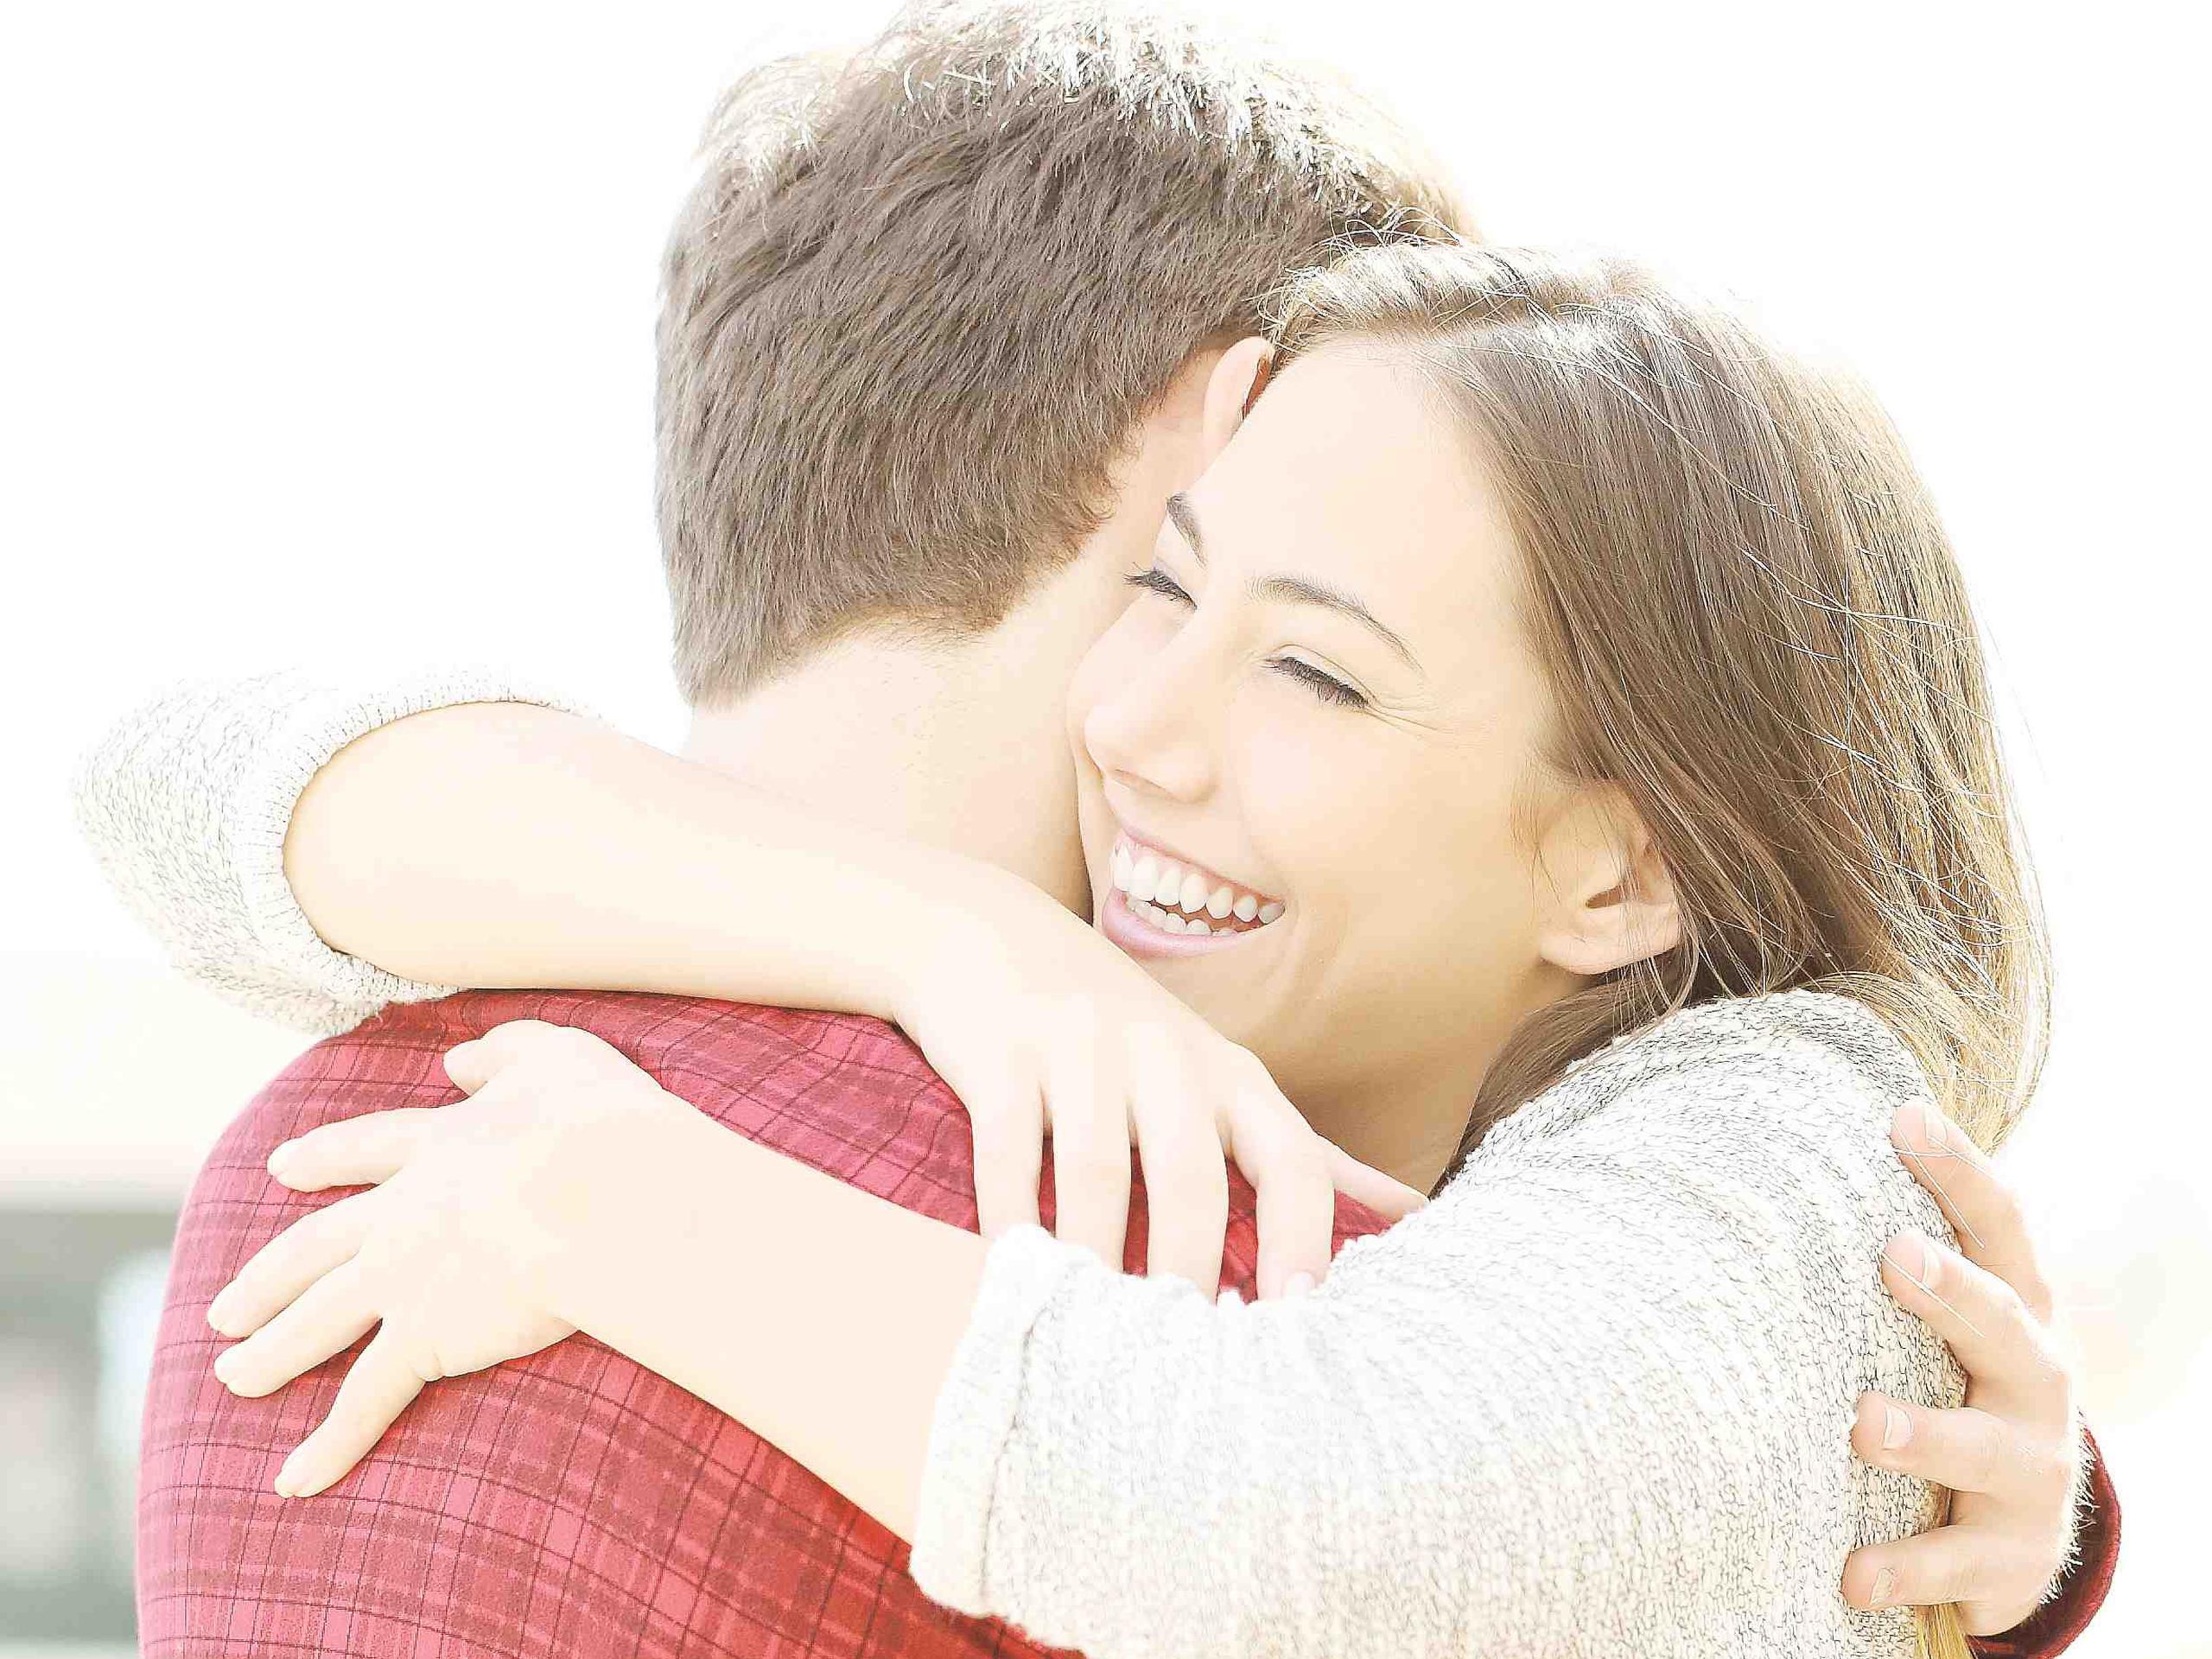 Este tipo de abrazo le demuestra a la pareja tranquilidad, entendimiento y consuelo. (Archivo/ GFR Media)